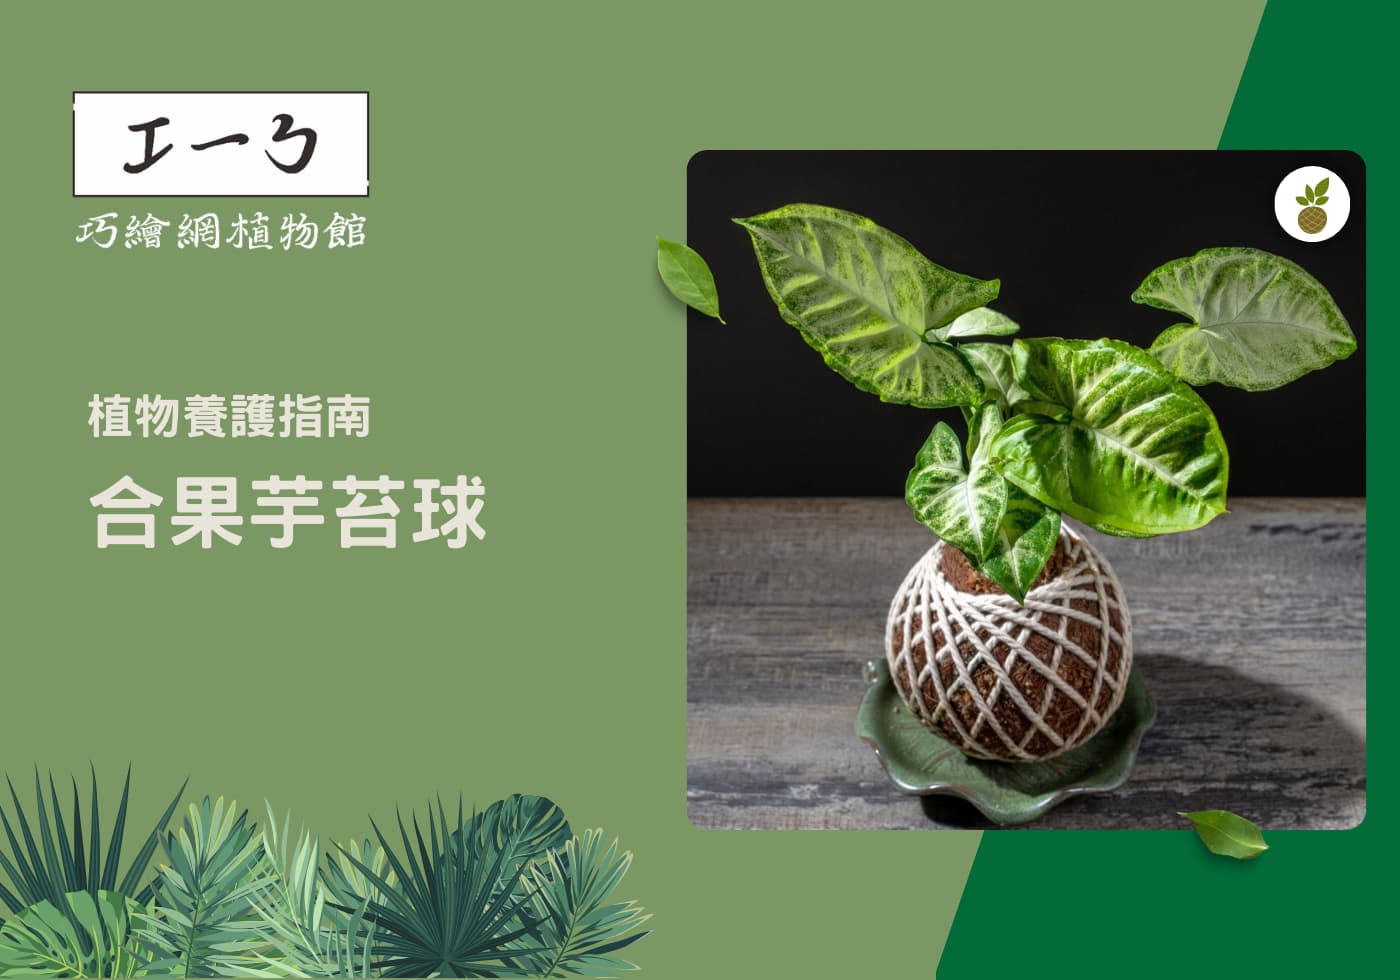 閱讀更多文章 如何養出健康茂盛的綠色植物-合果芋栽培指南